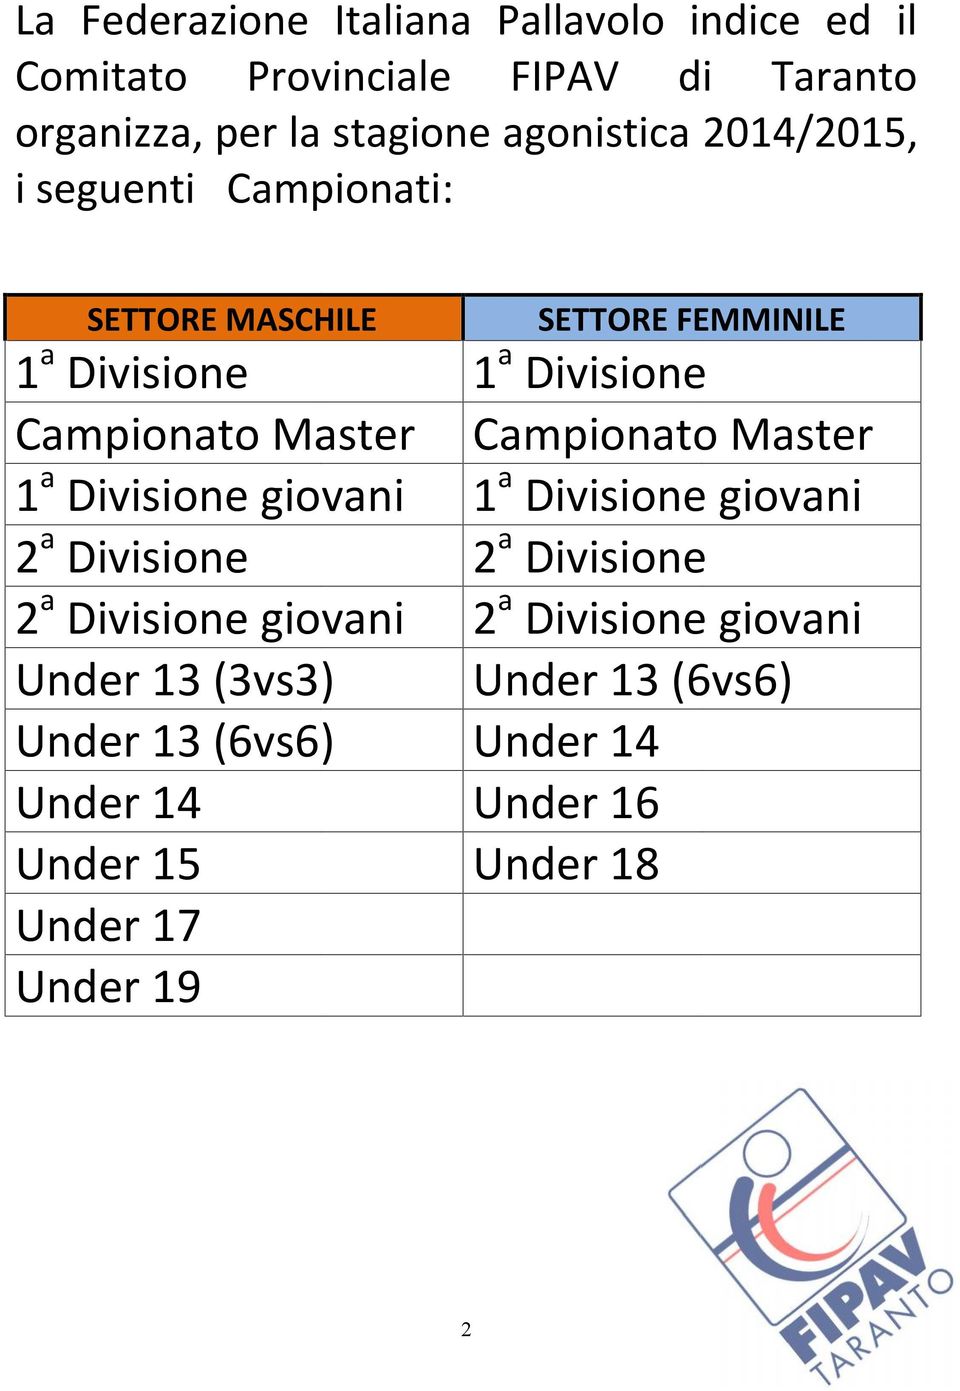 Master Campionato Master 1 a Divisione giovani 1 a Divisione giovani 2 a Divisione 2 a Divisione 2 a Divisione giovani 2